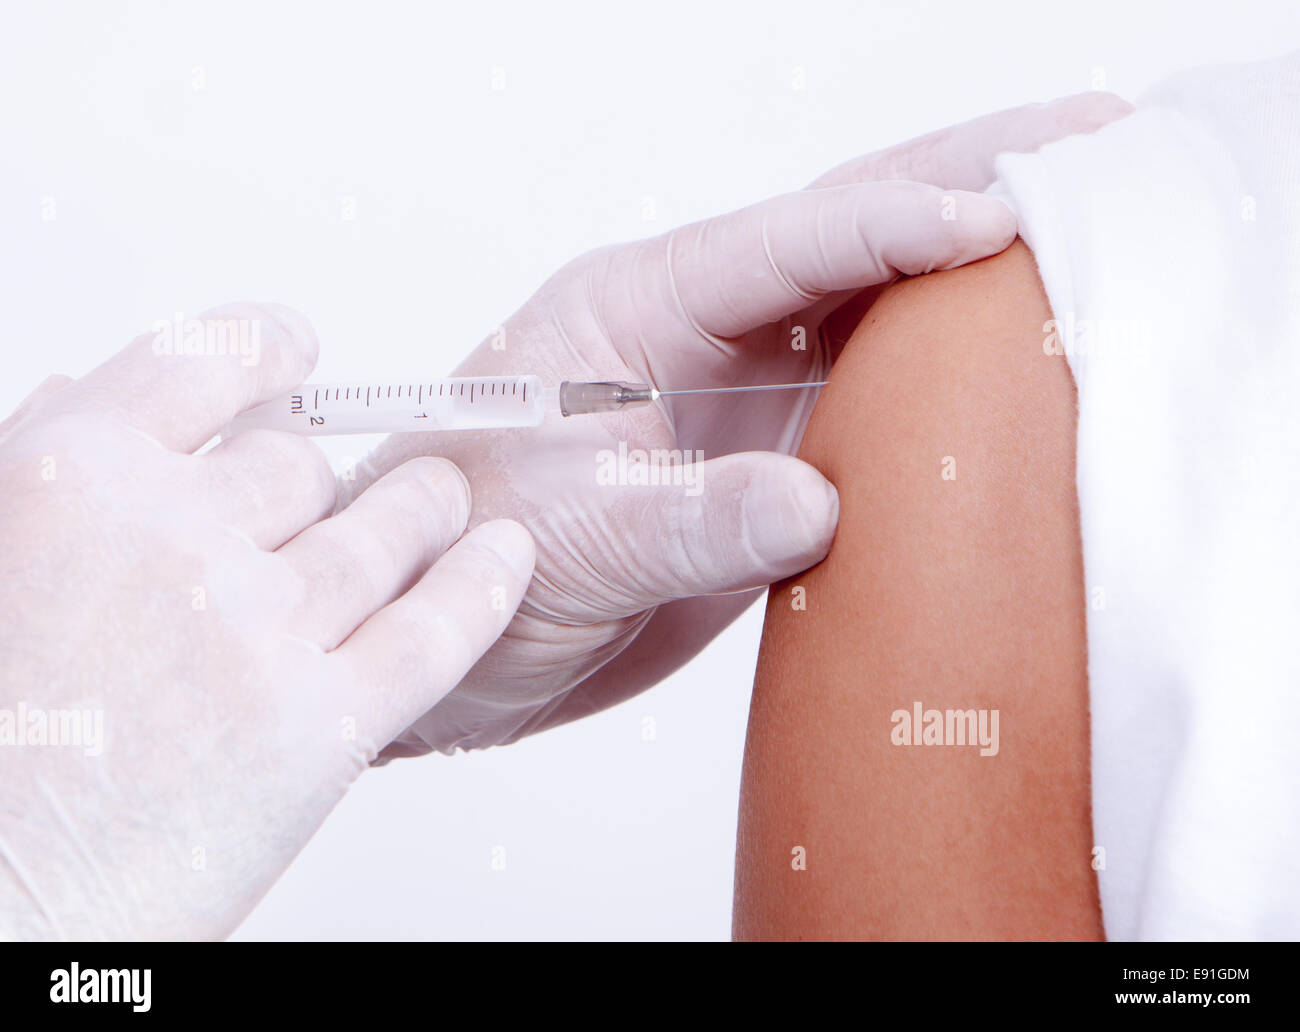 Infirmière donnant un vaccin contre la maladie d'un patient, les vaccins Banque D'Images